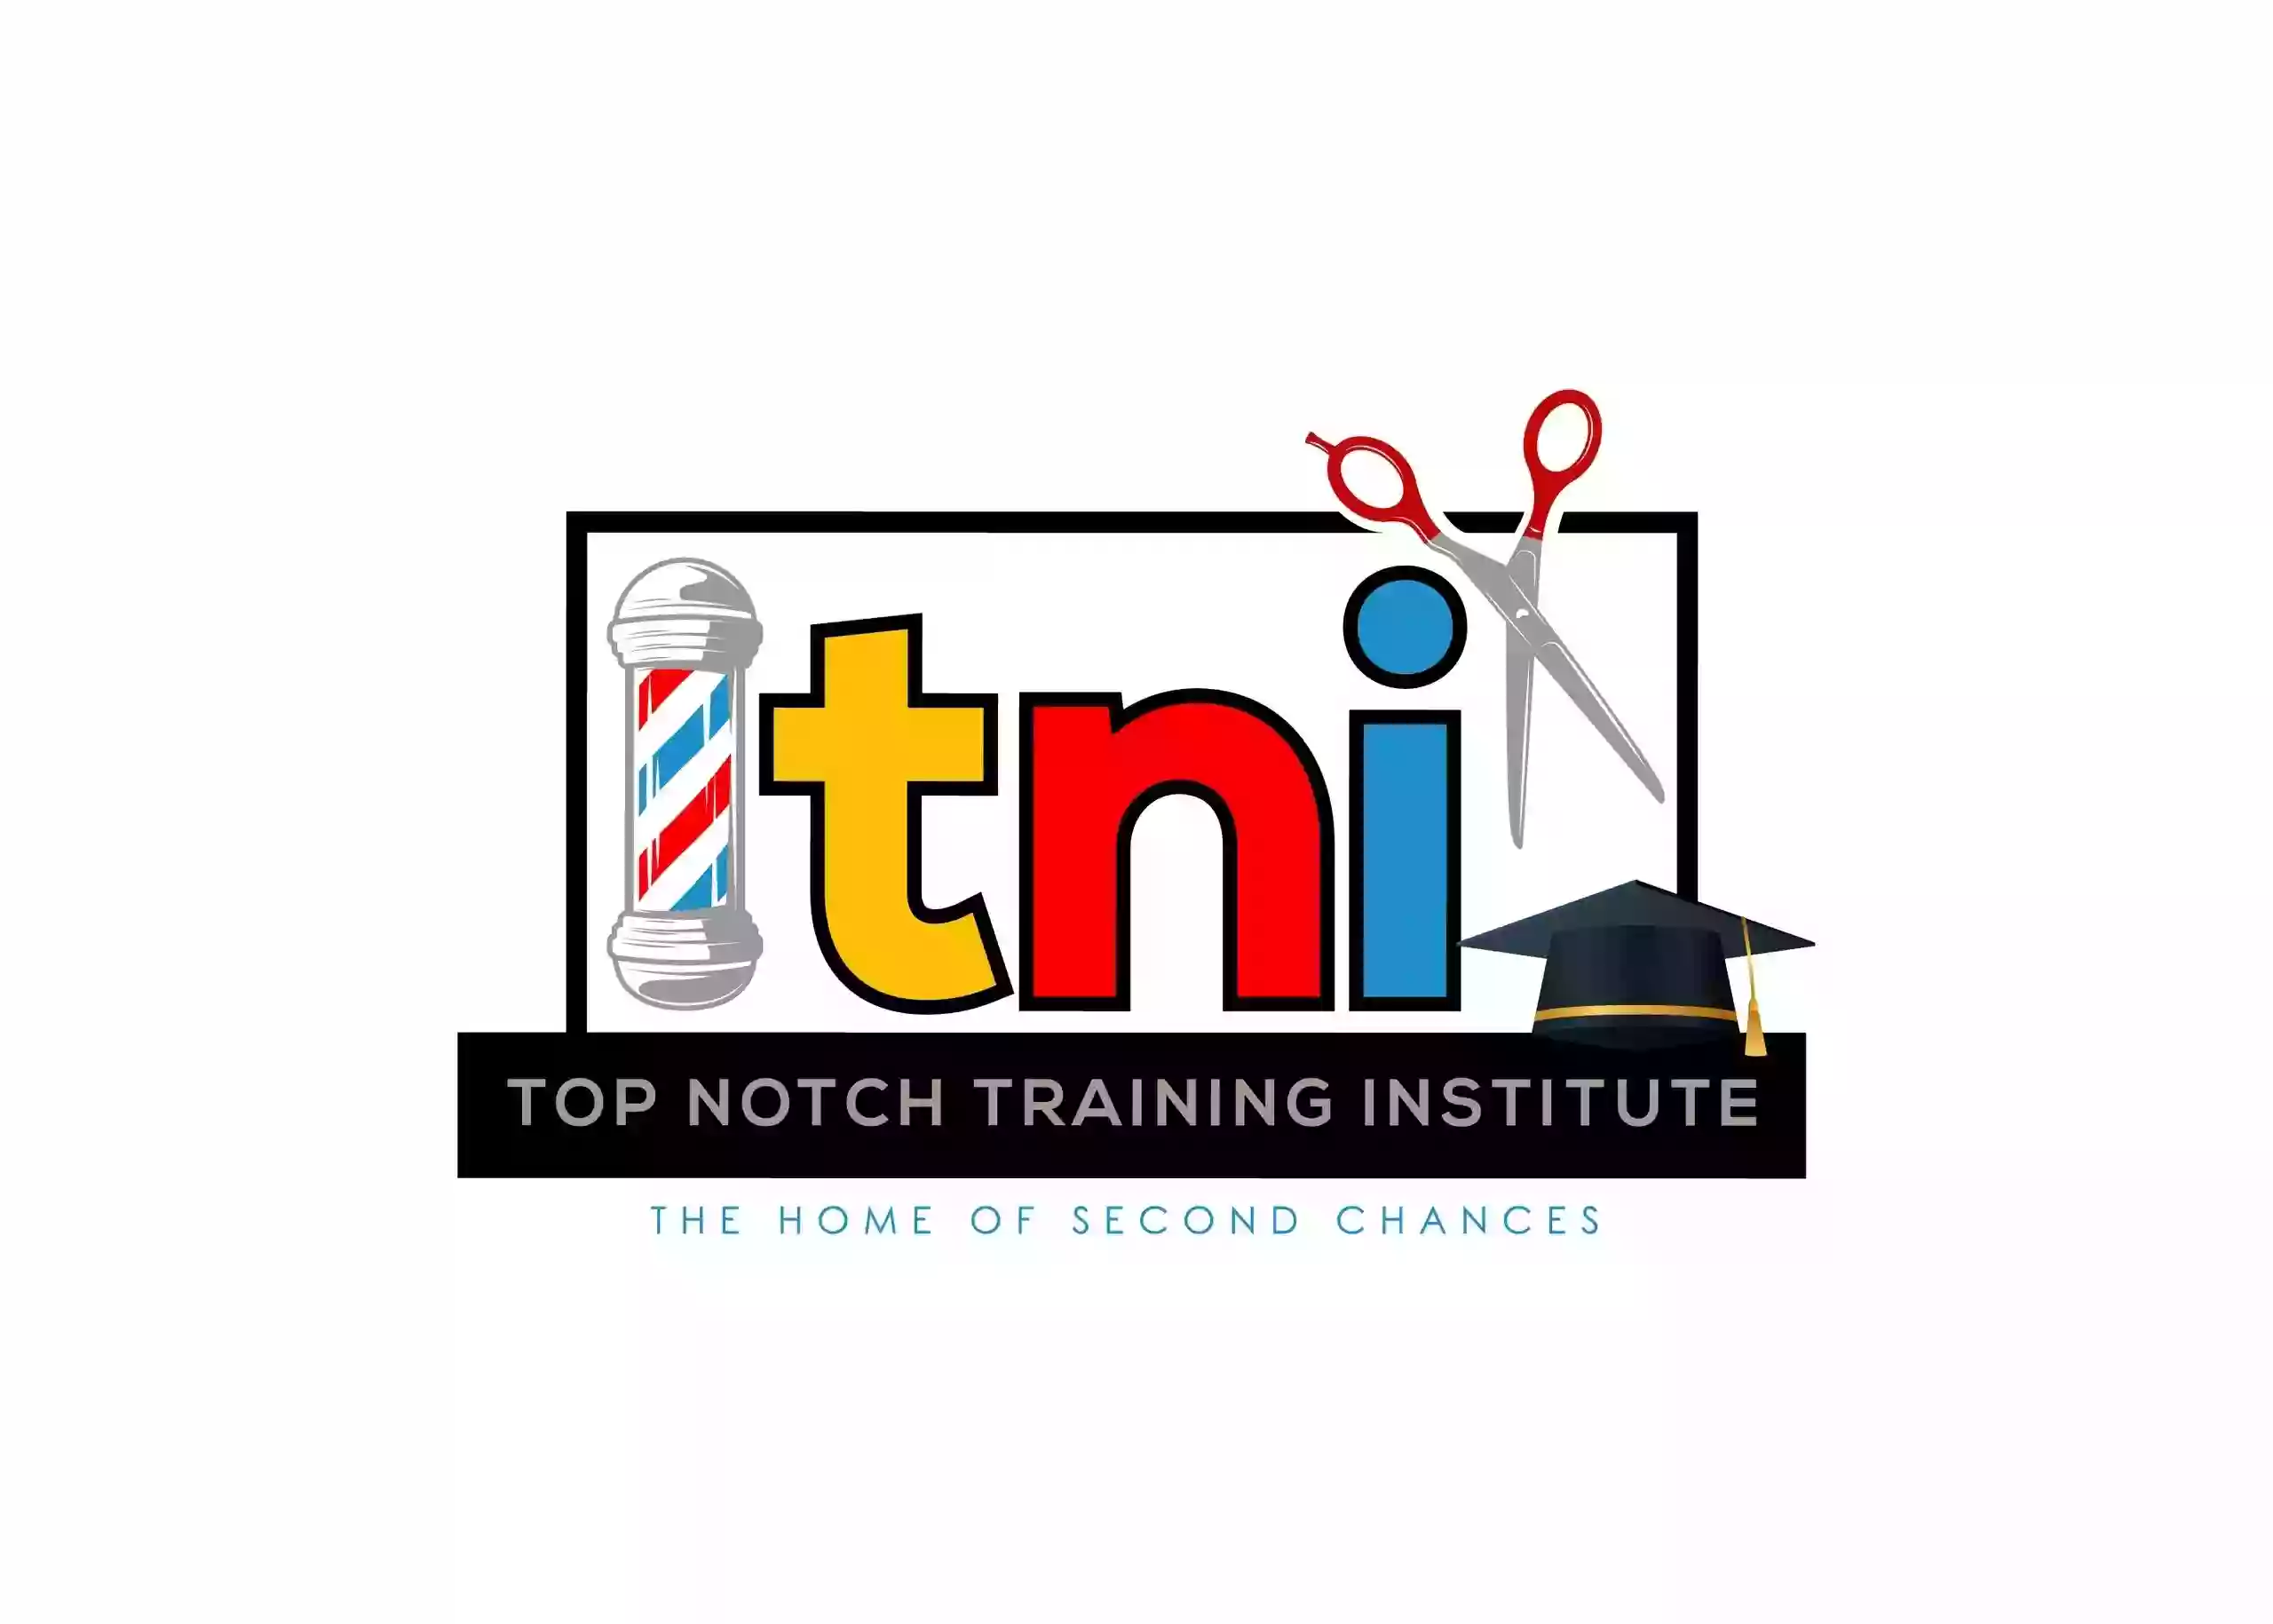 Top Notch Training Institute